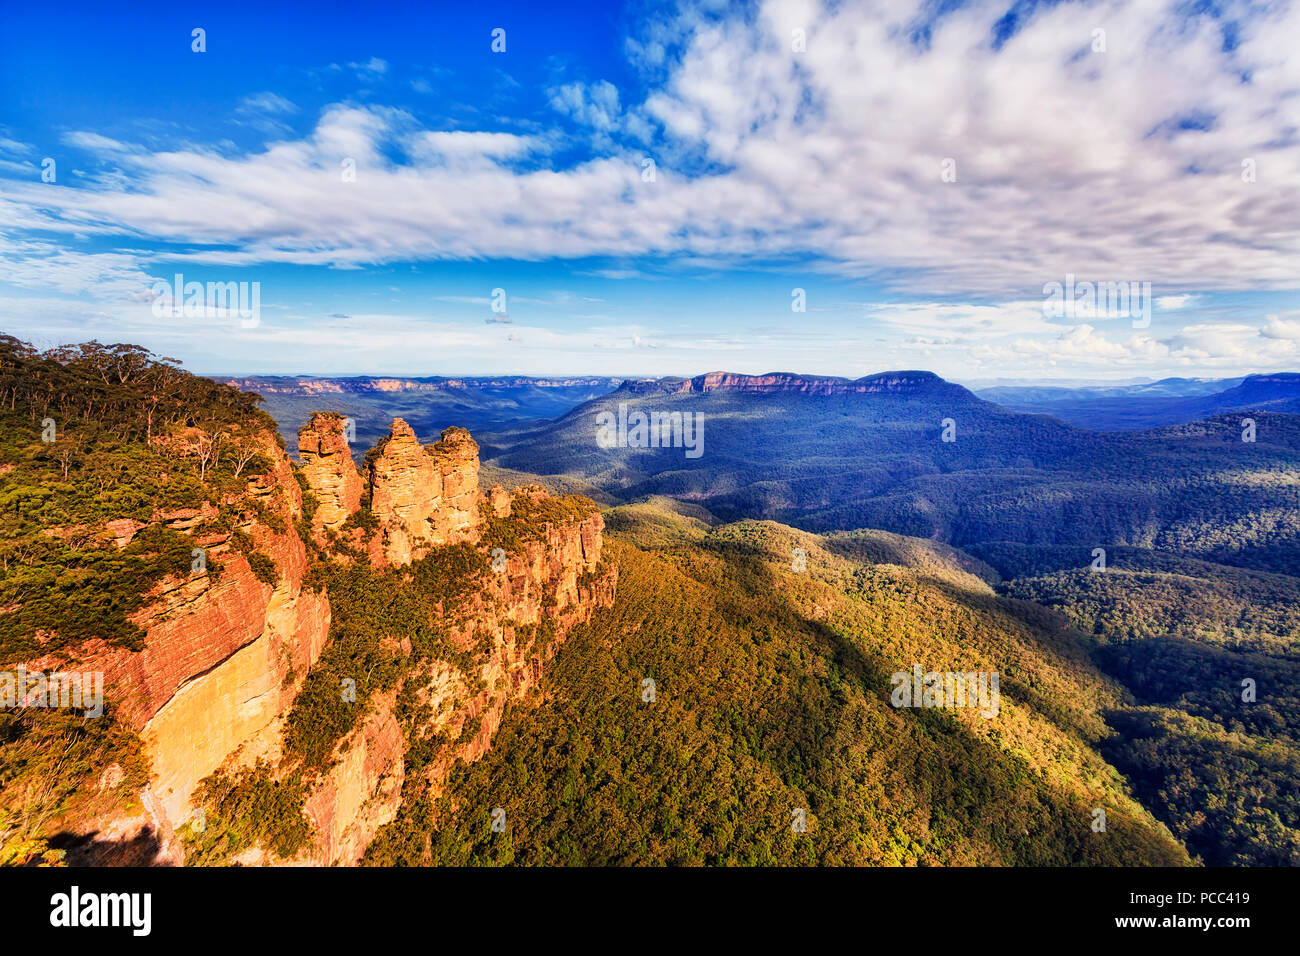 Tres hermanas de rocas hito natural con Monte Soledad en una distancia más extenso valle visto desde Echo point lookout en Katoomba town - Azul Mou Foto de stock